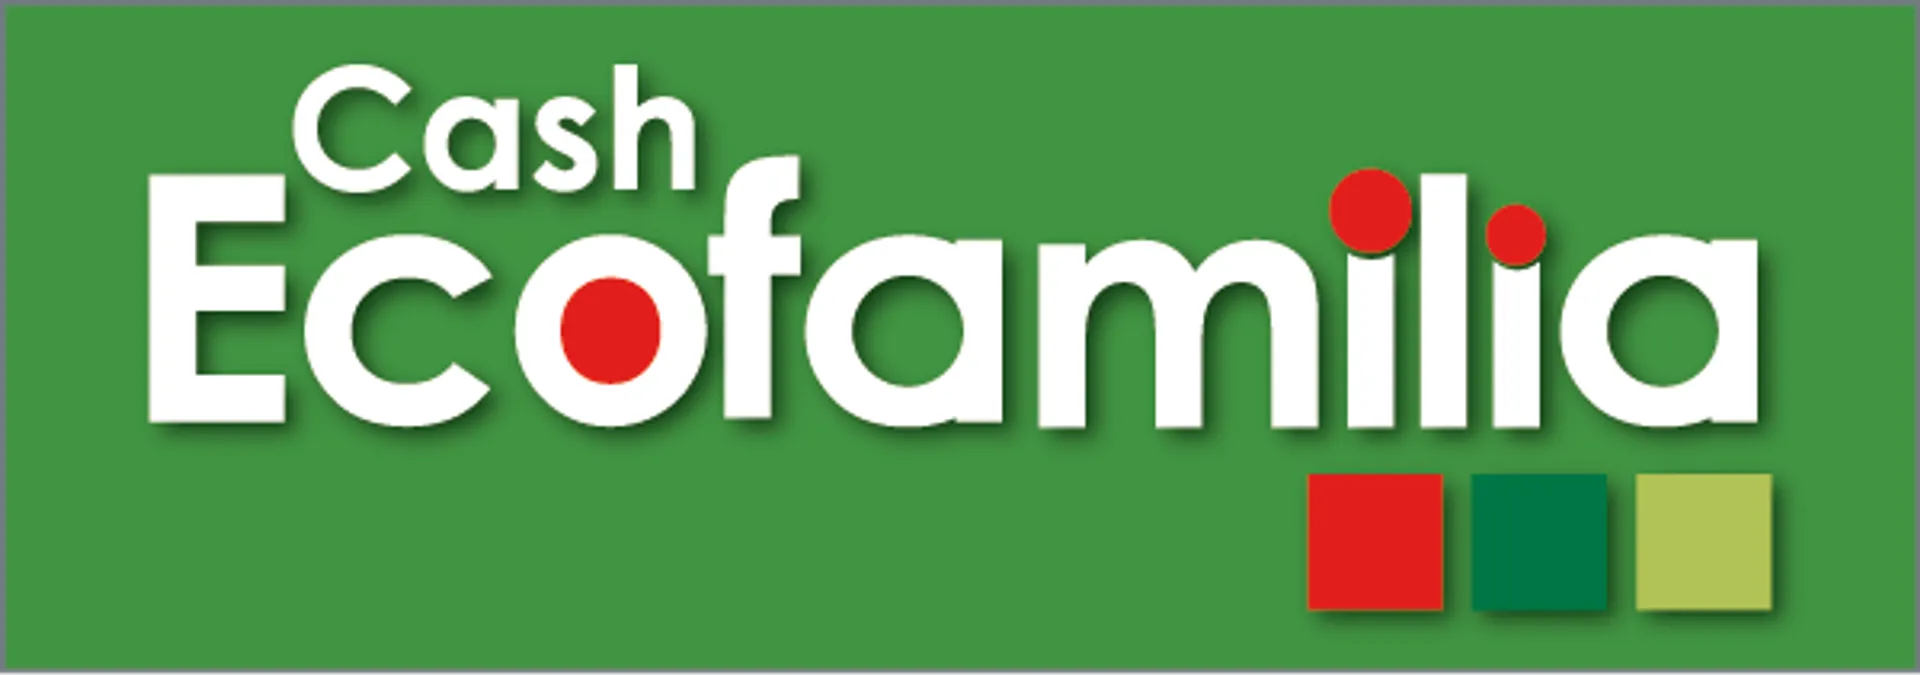 CASH ECOFAMILIA logo